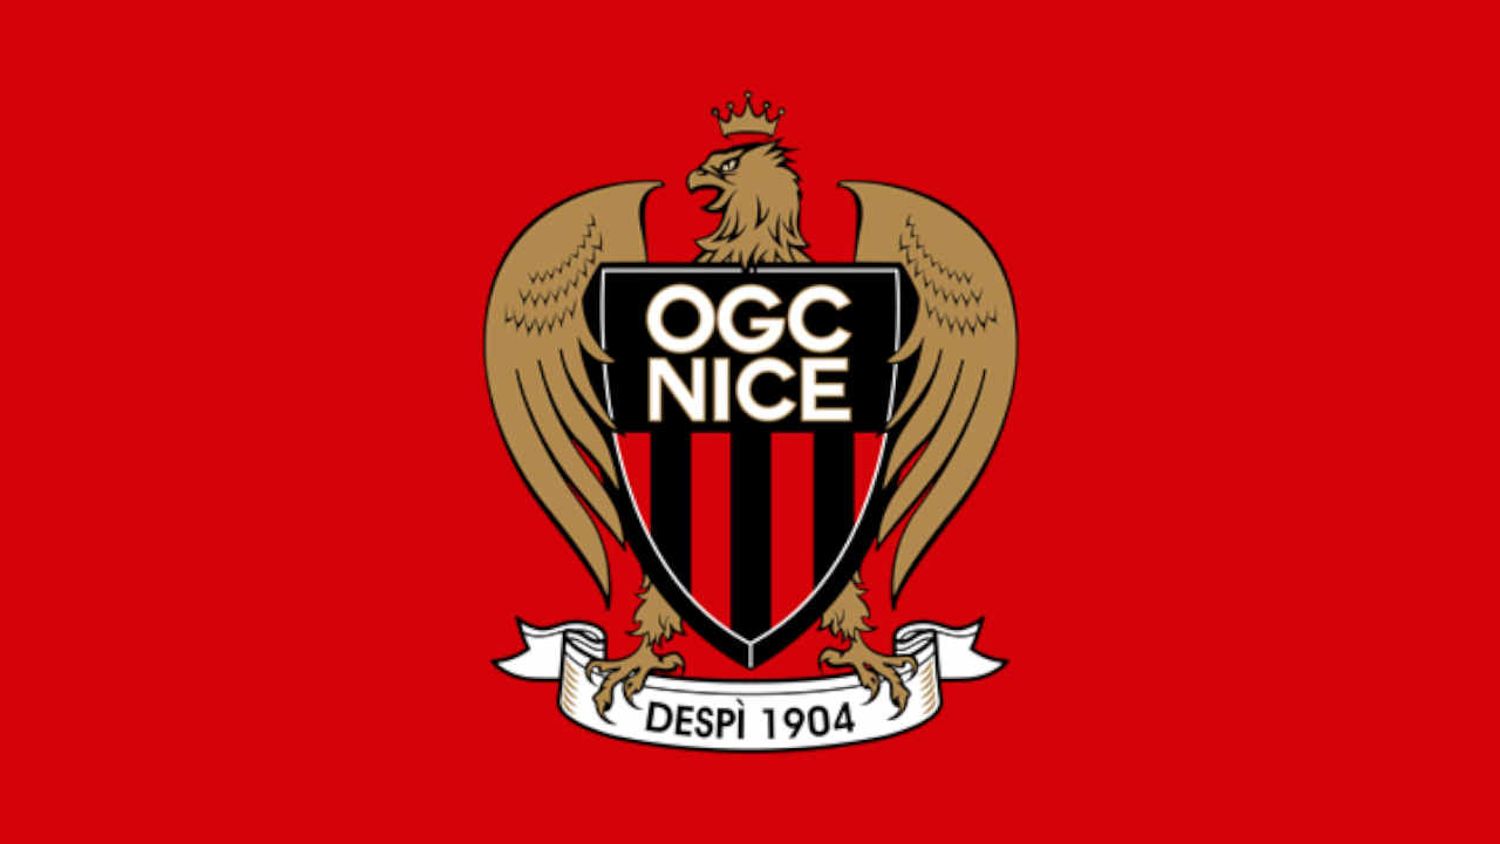 GAGNEZ VOS PLACES POUR LE MATCH OGC NICE- TORINO FC